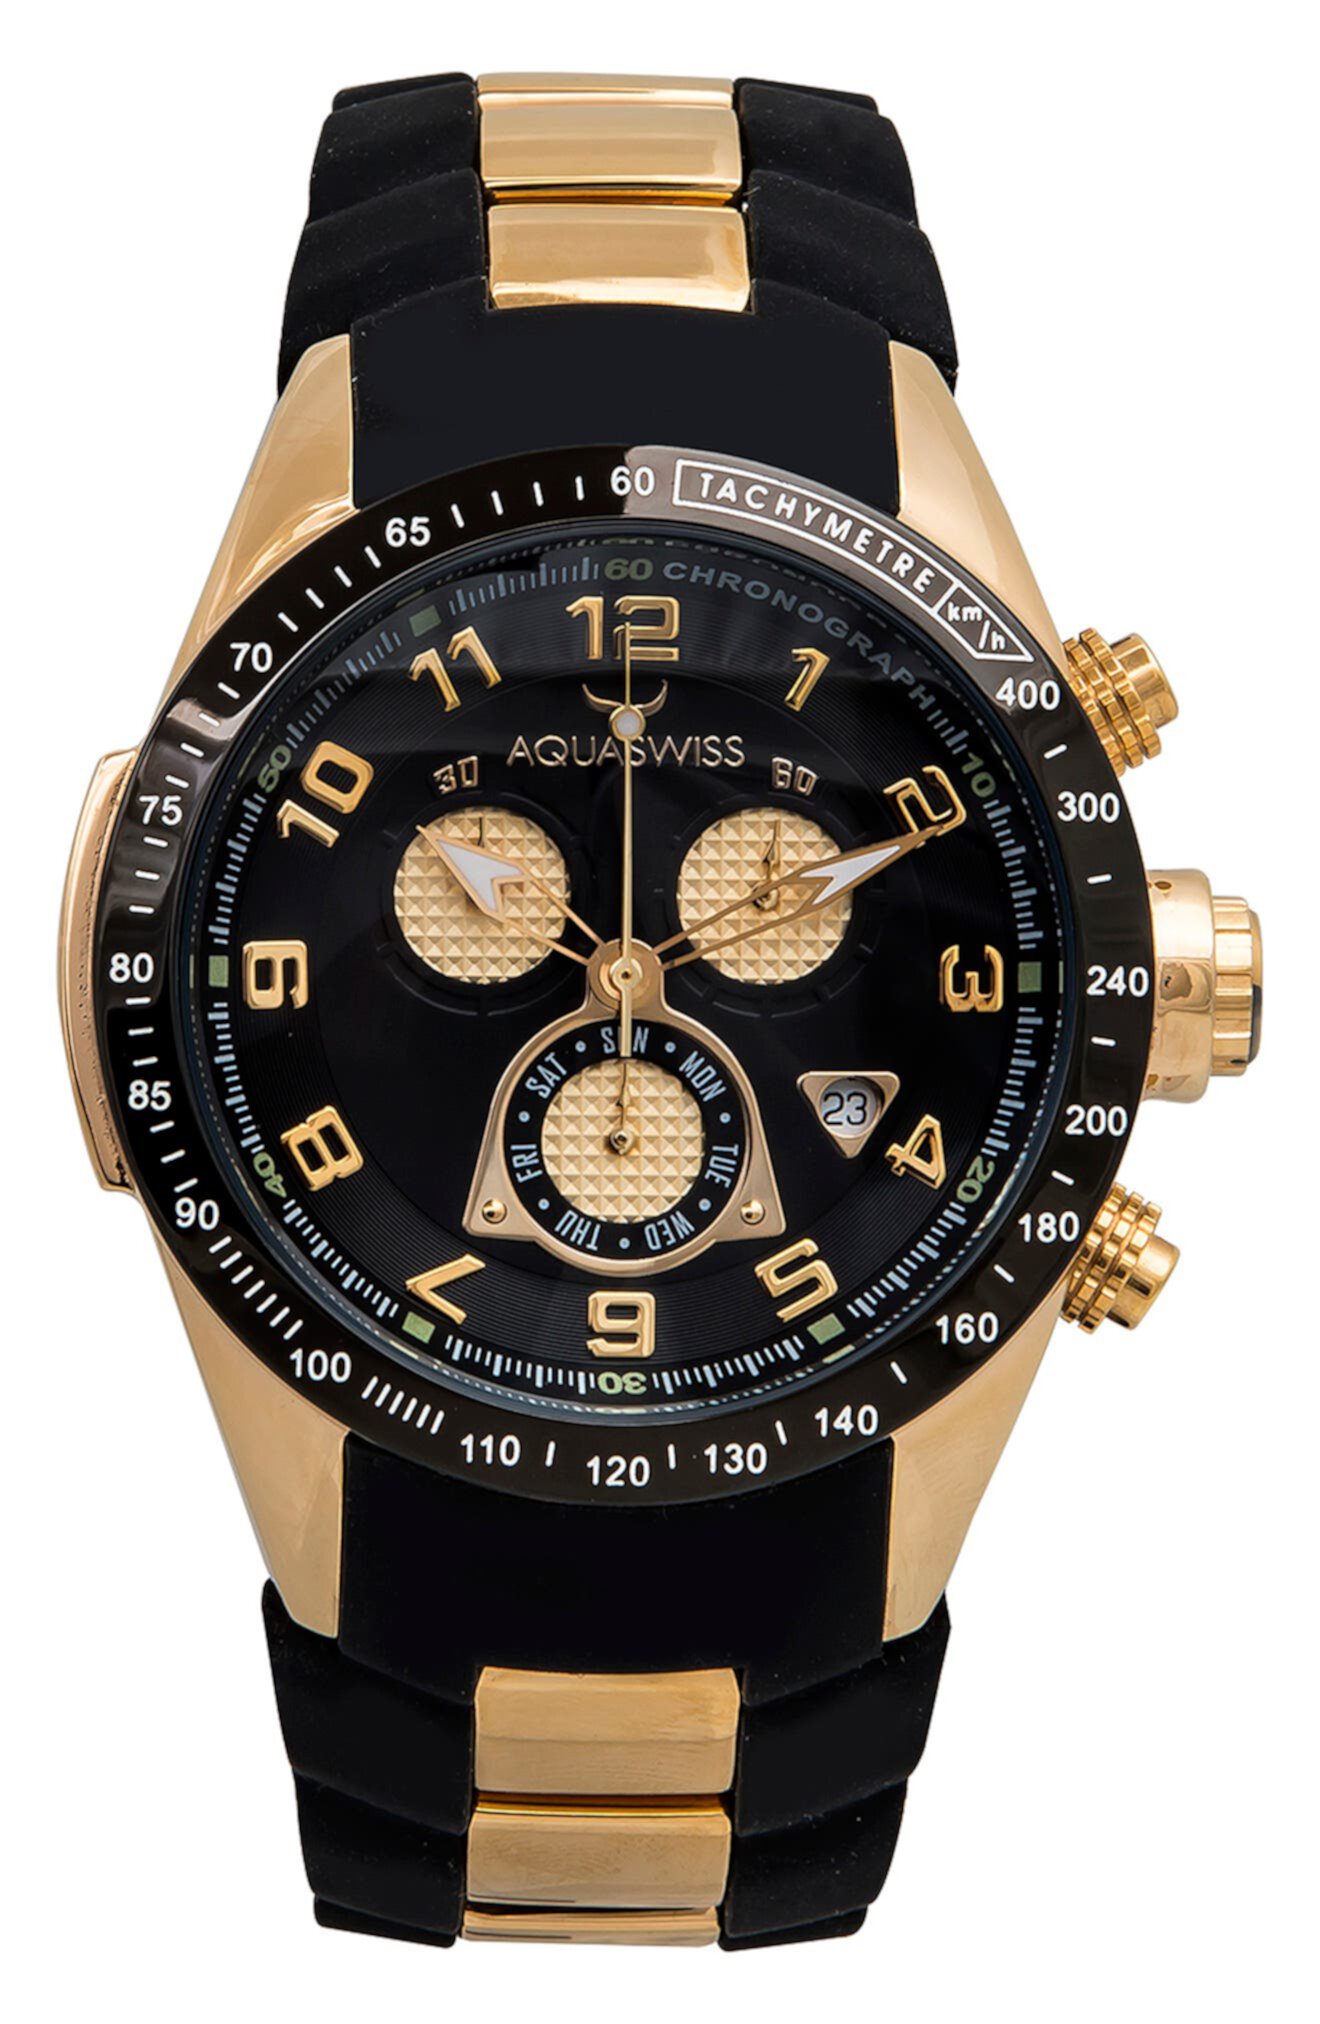 Мужские часы Trax 6H с силиконовым ремешком, 43 мм x 53 мм Aquaswiss